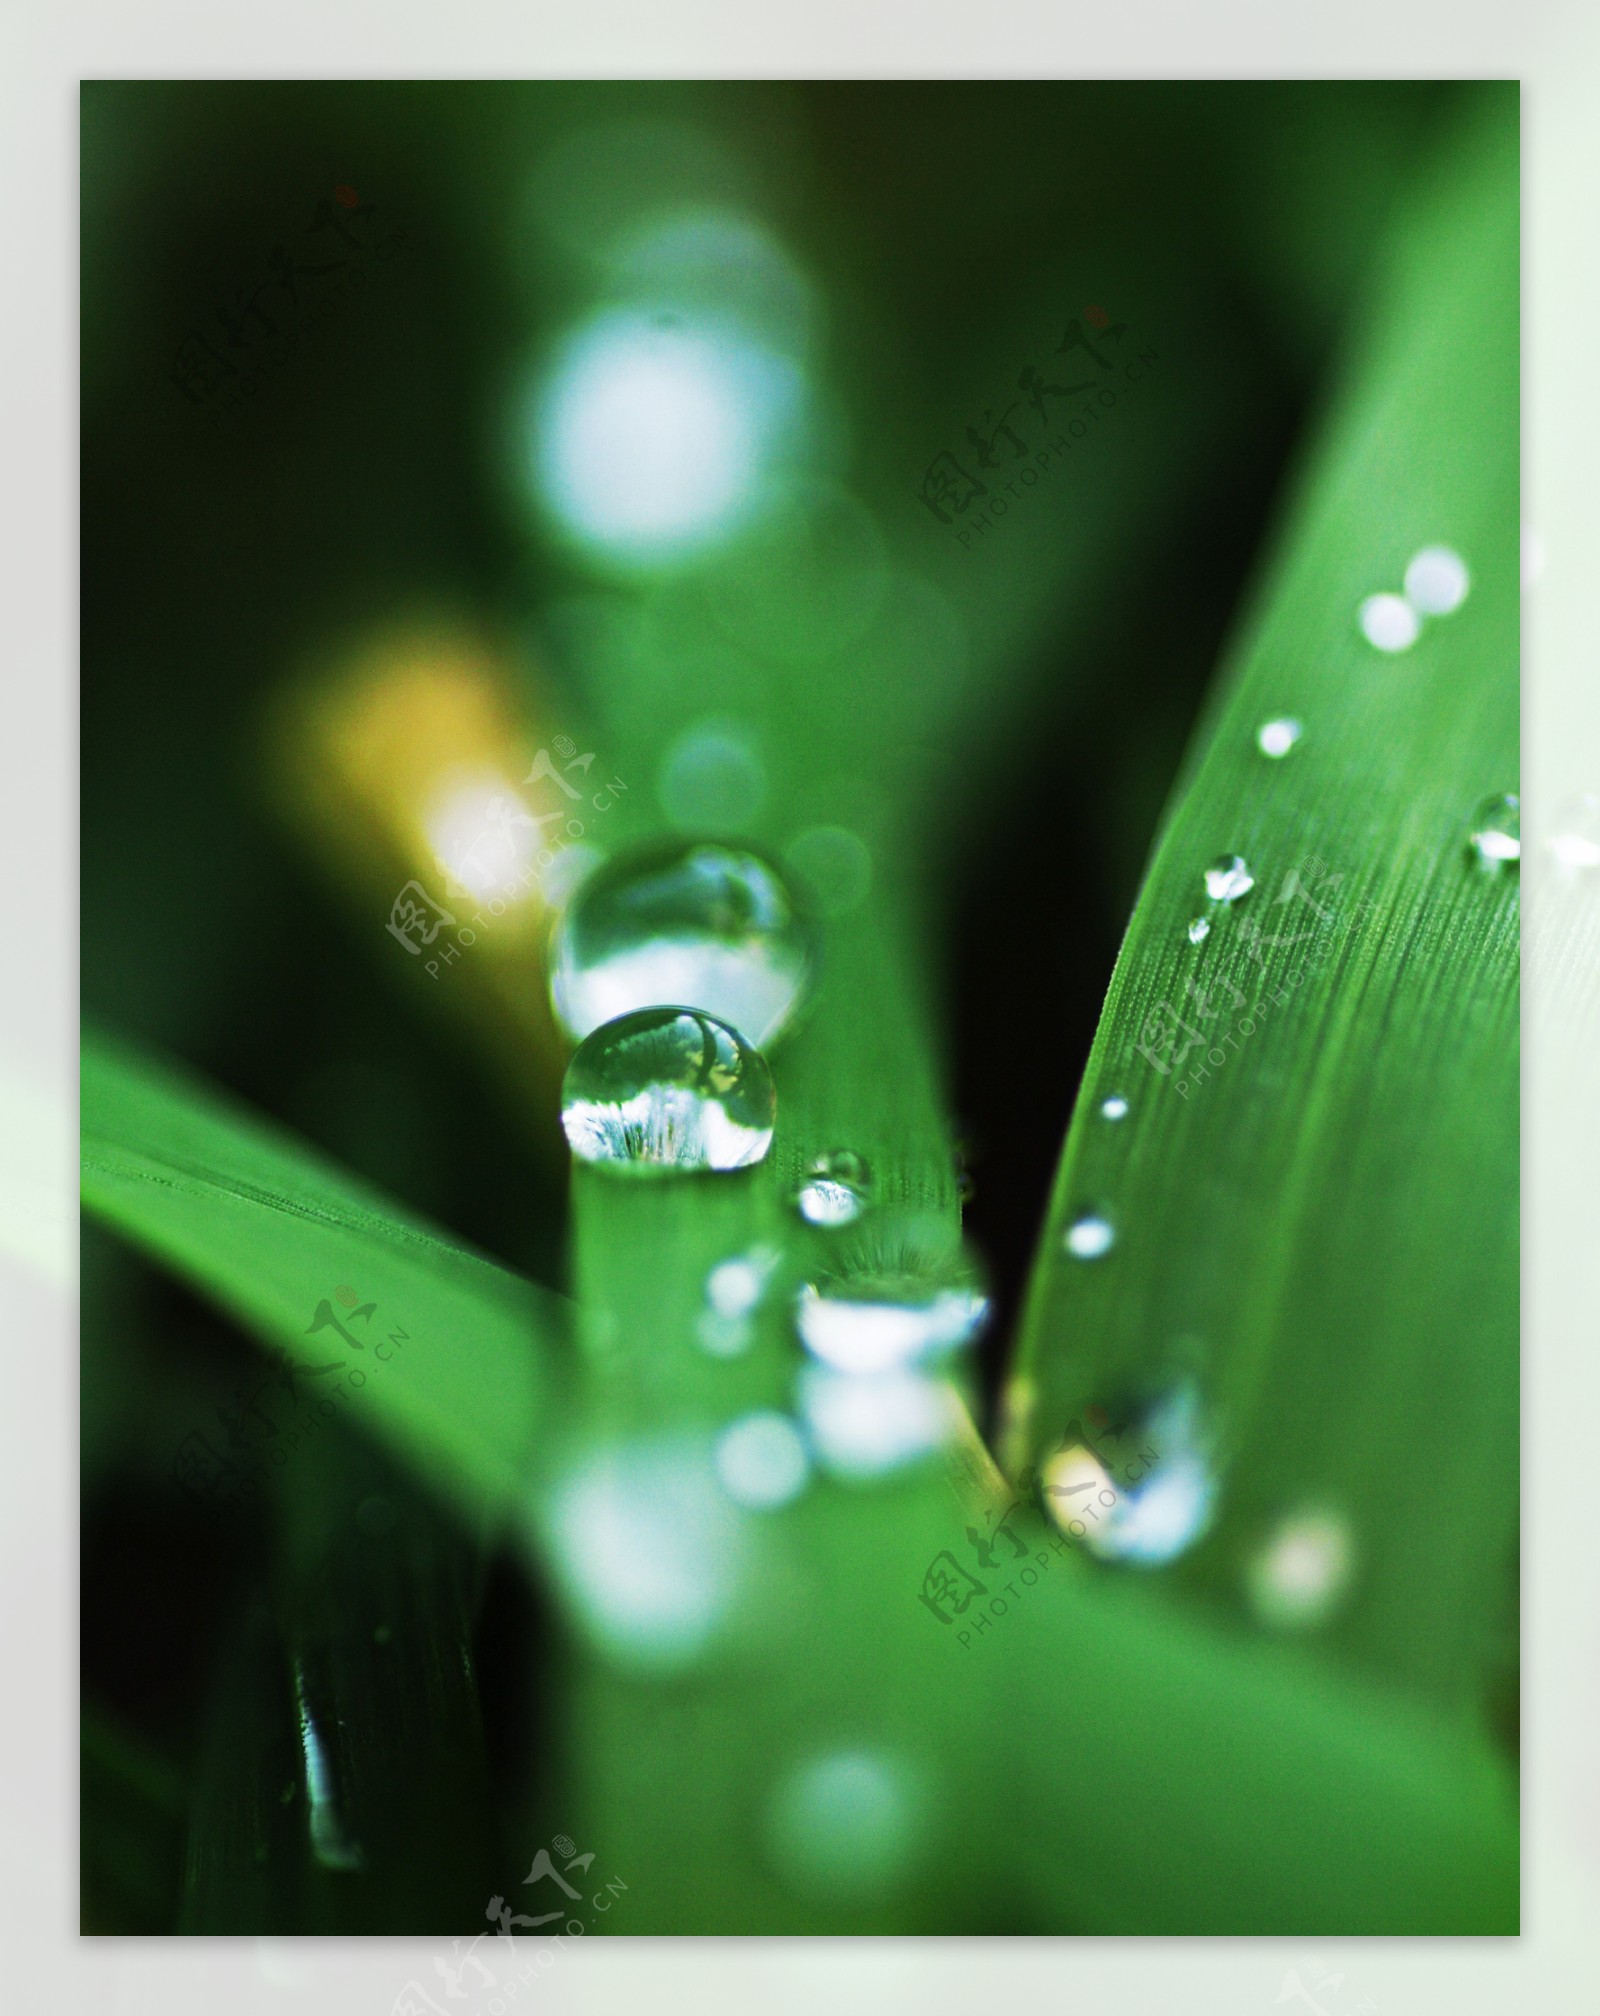 绿叶-水滴(小清新静态壁纸) - 静态壁纸下载 - 元气壁纸